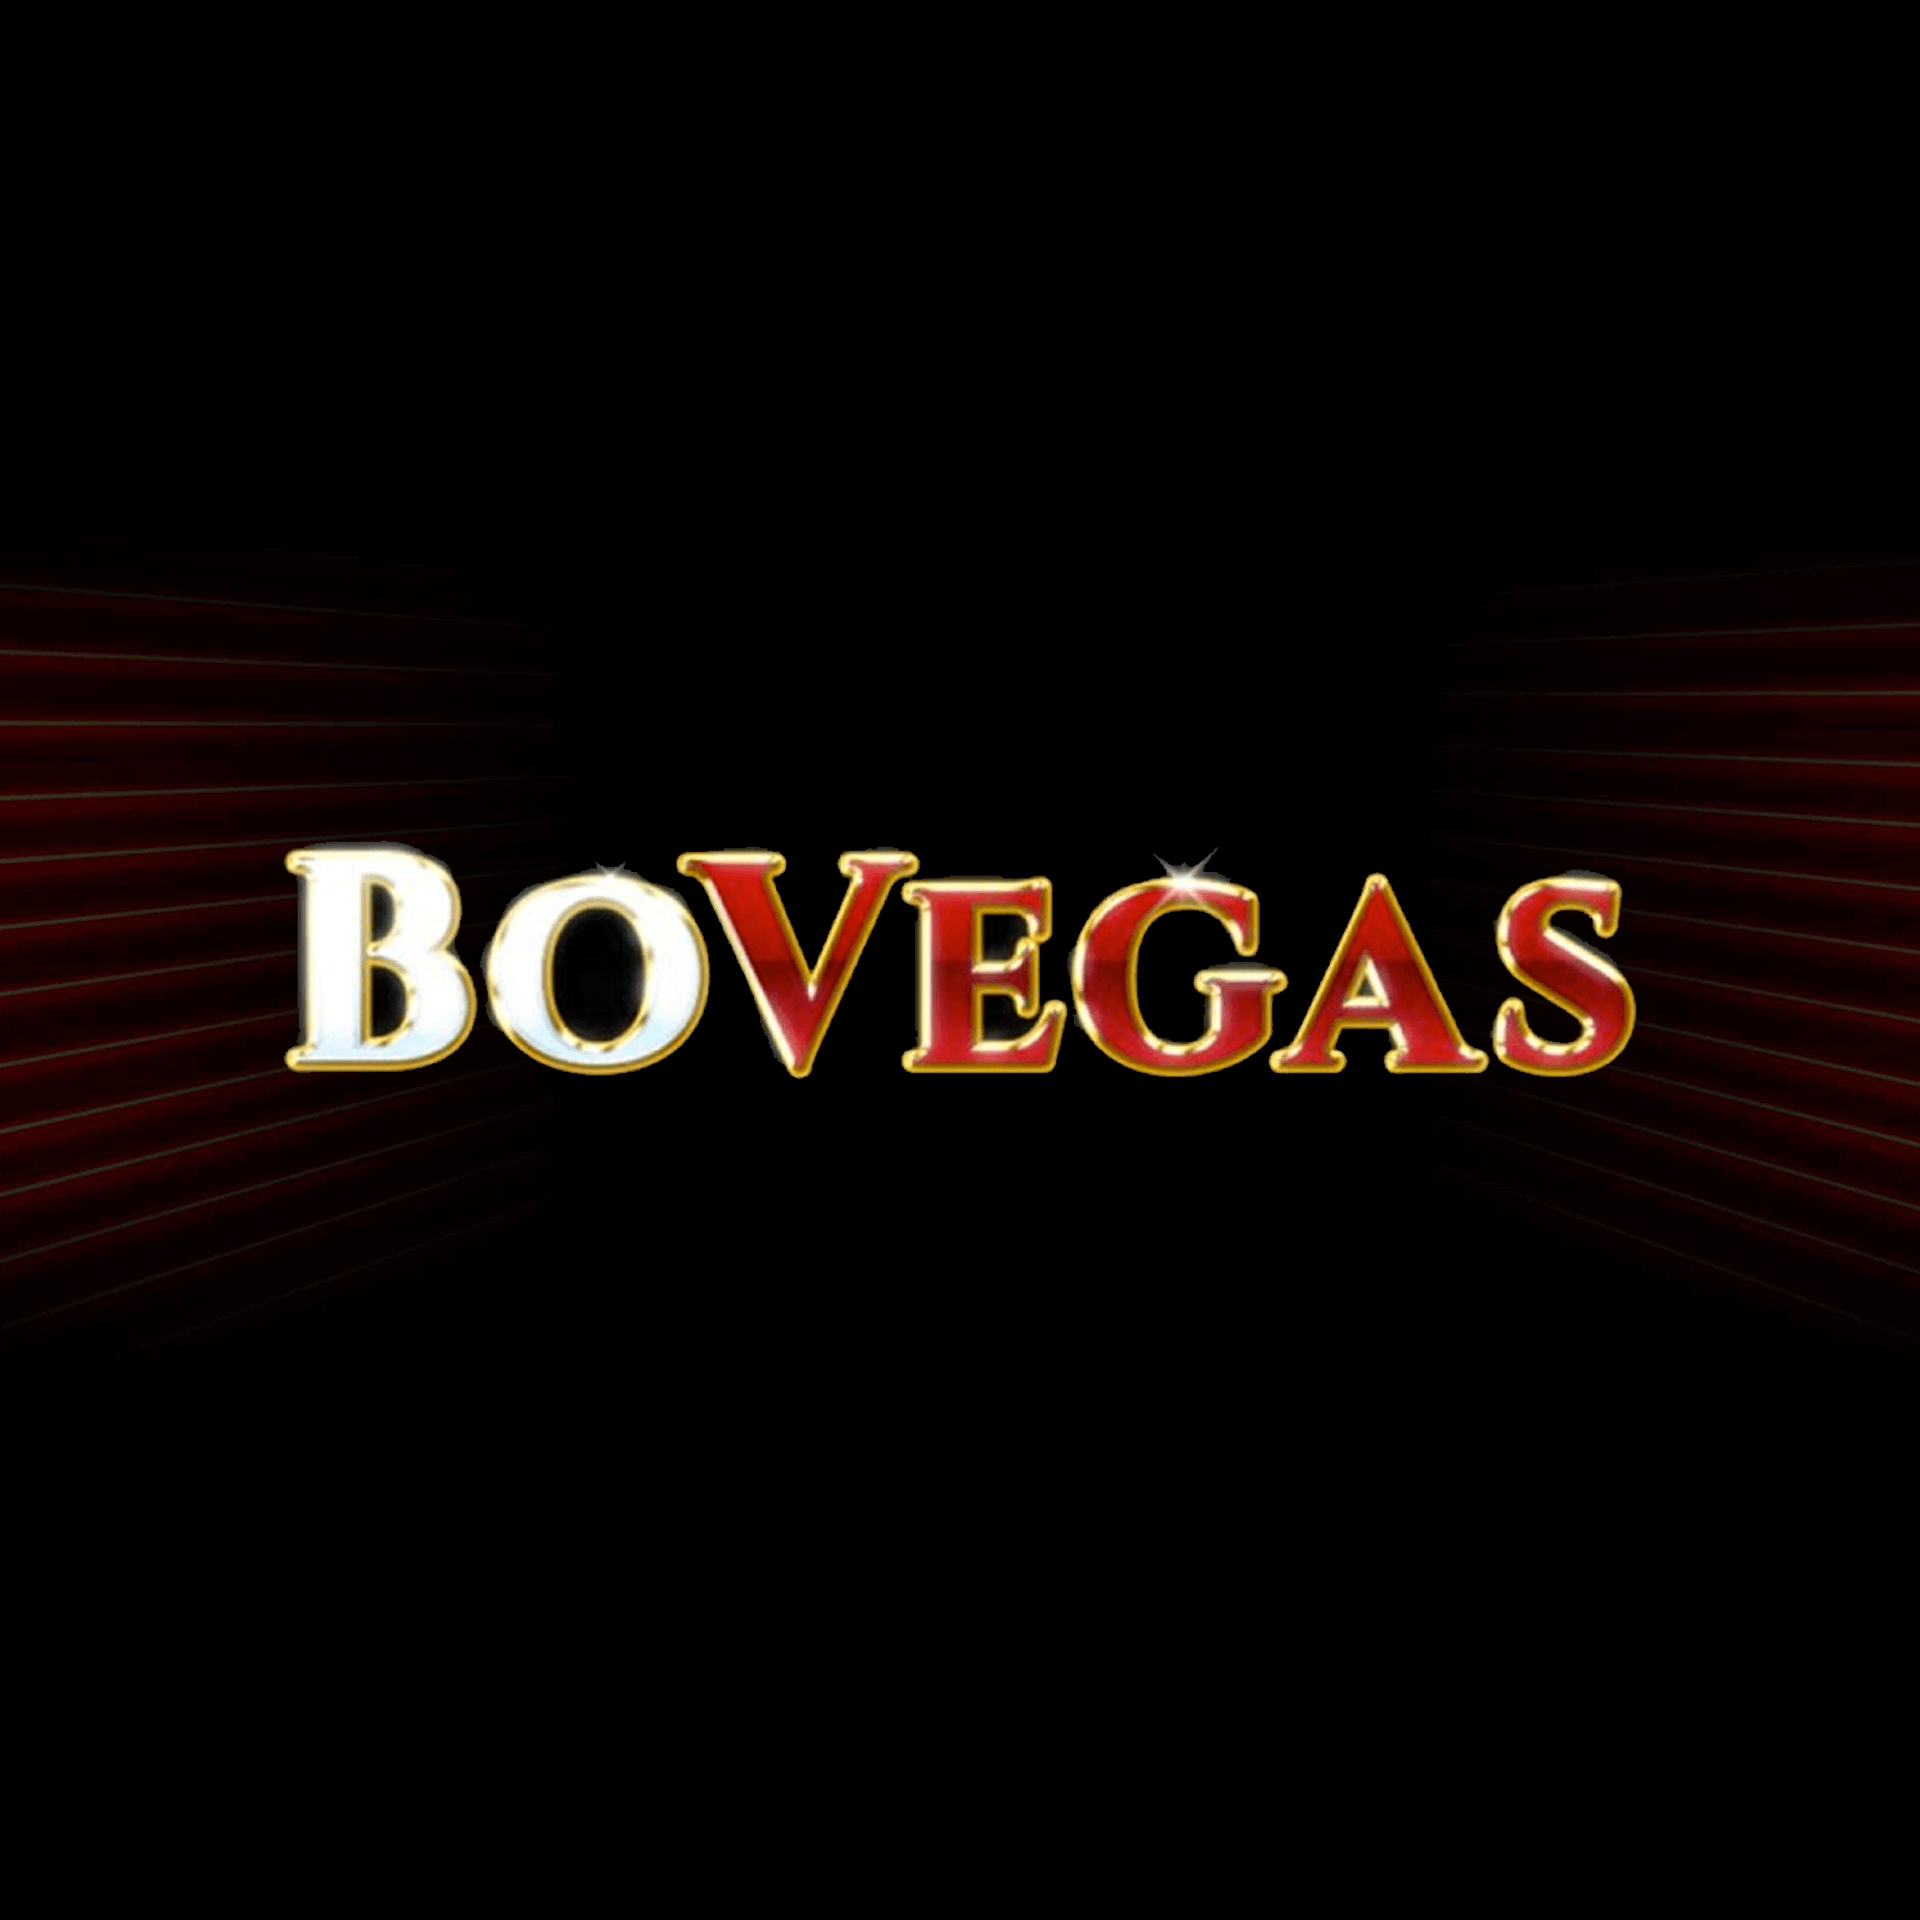 Casino BoVegas